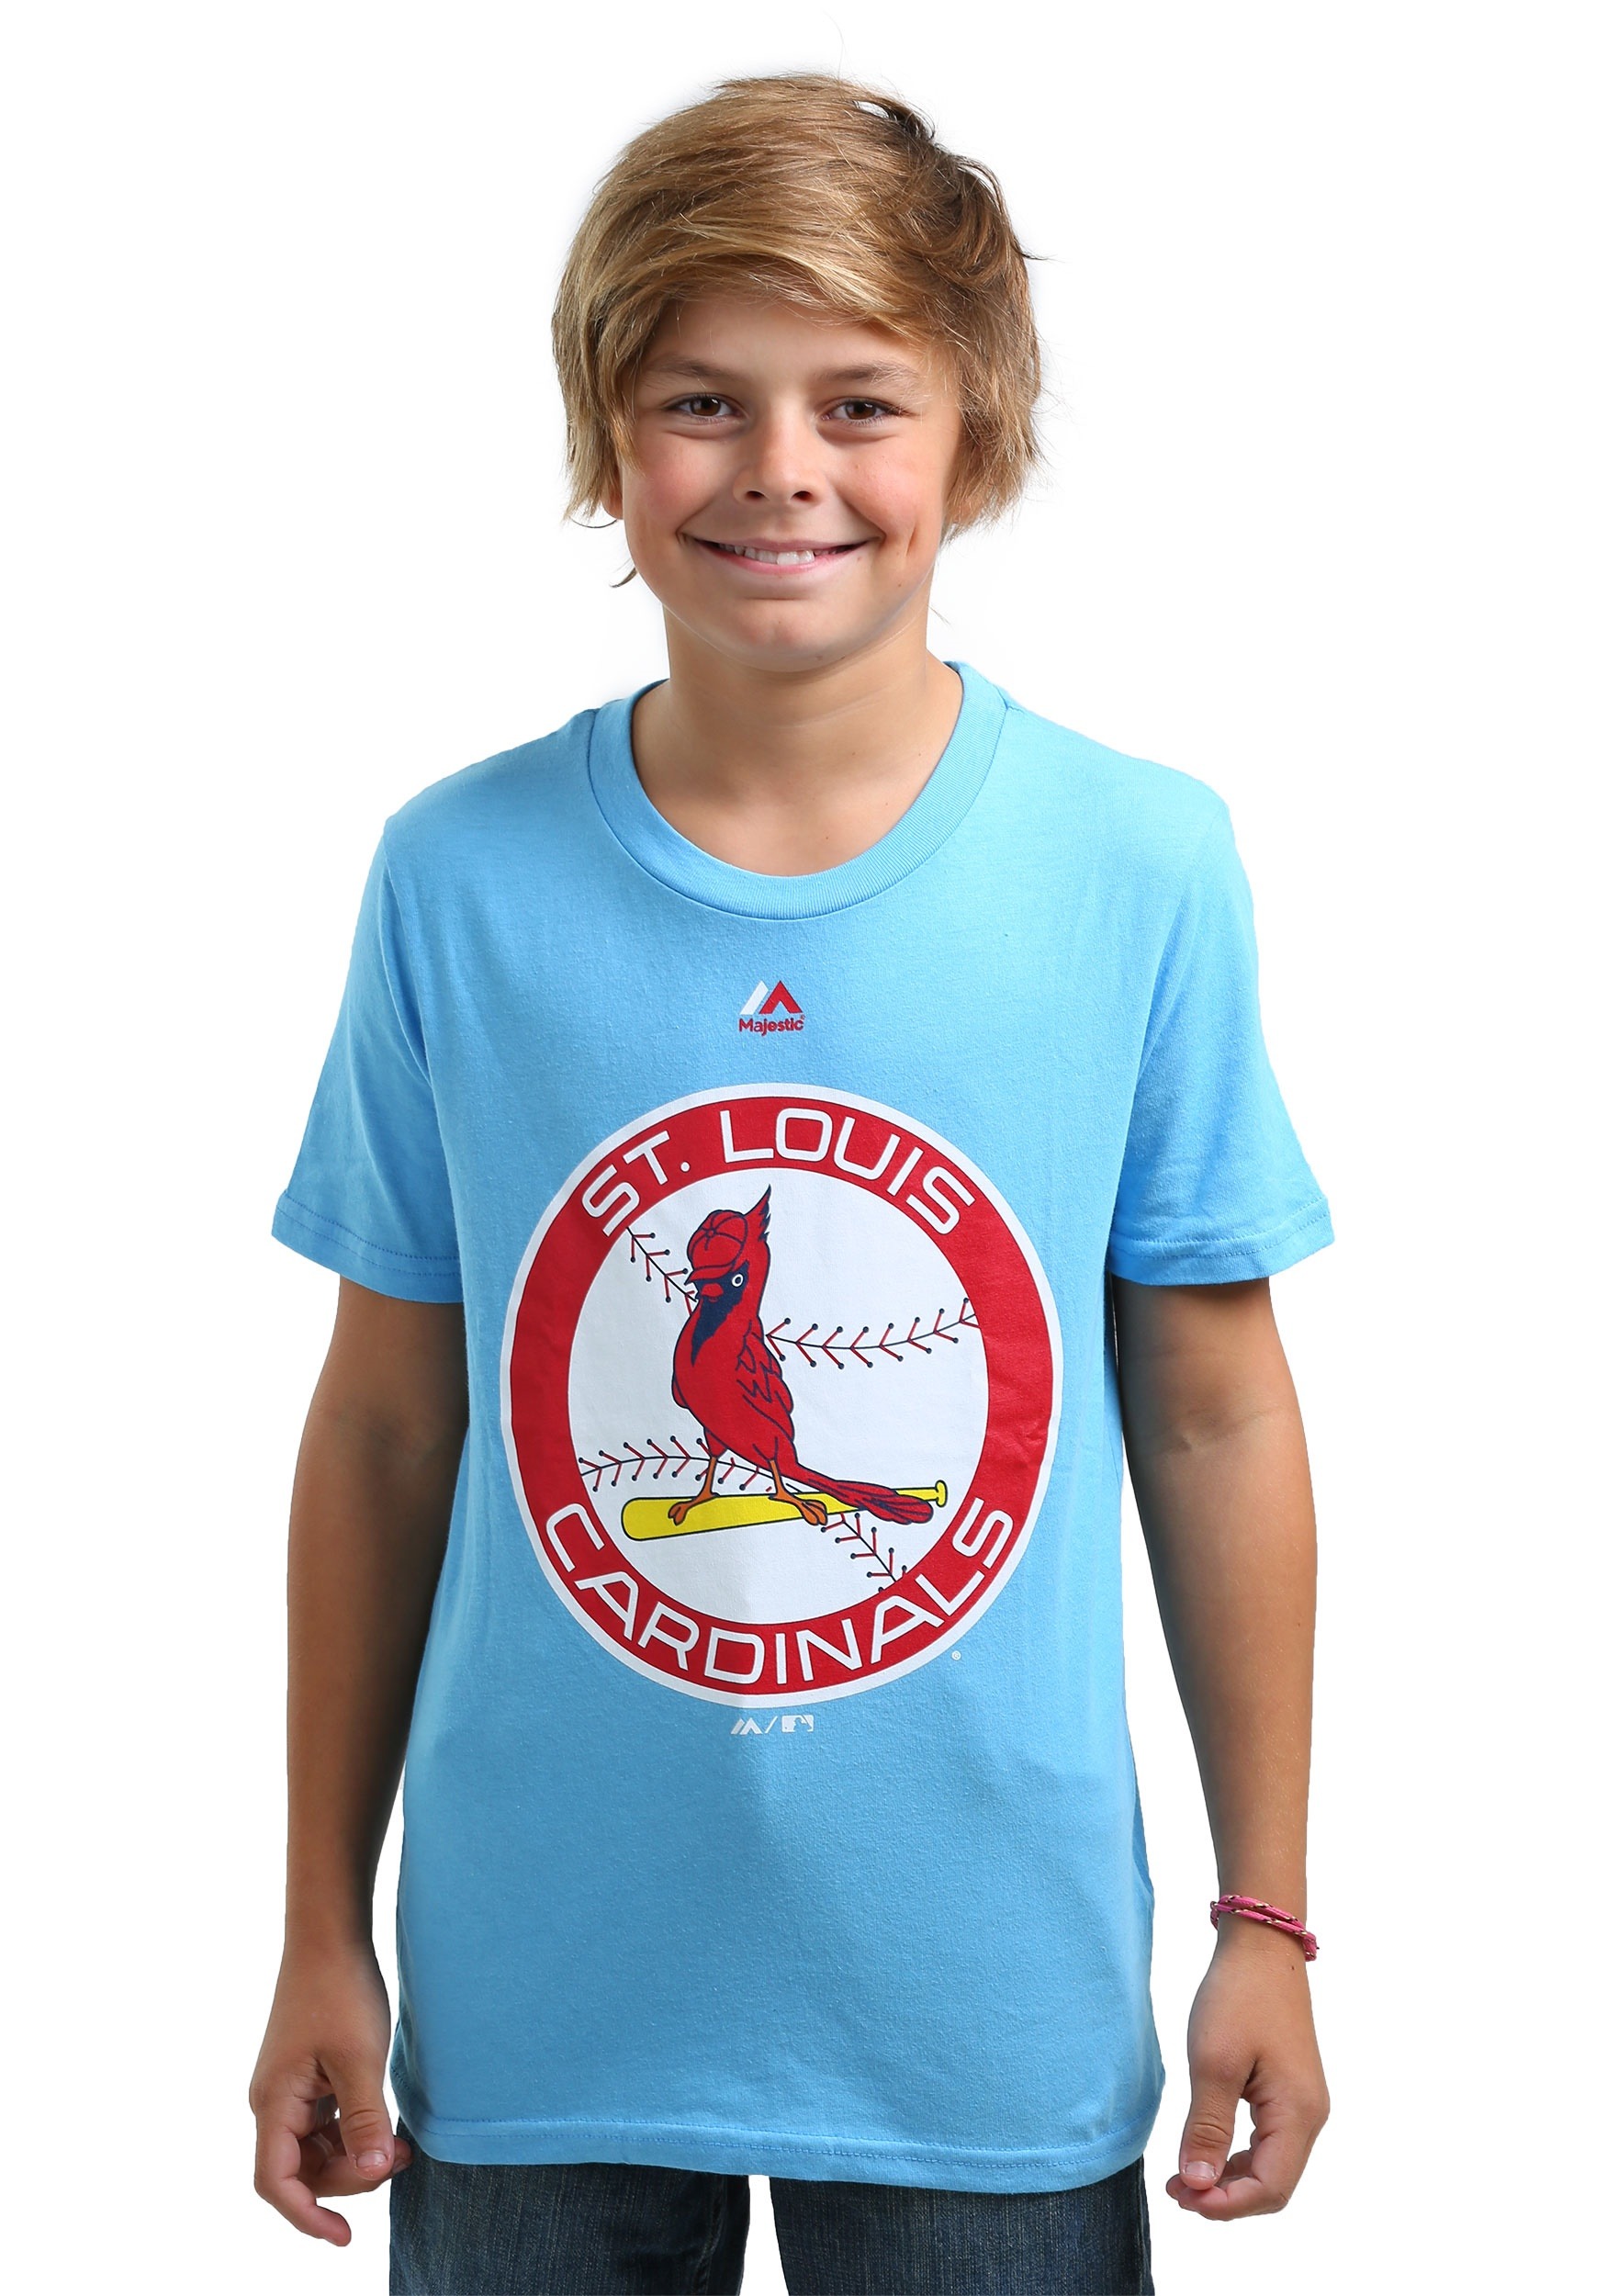 St. Louis Cardinals Cooperstown Logo T-Shirt for Kids